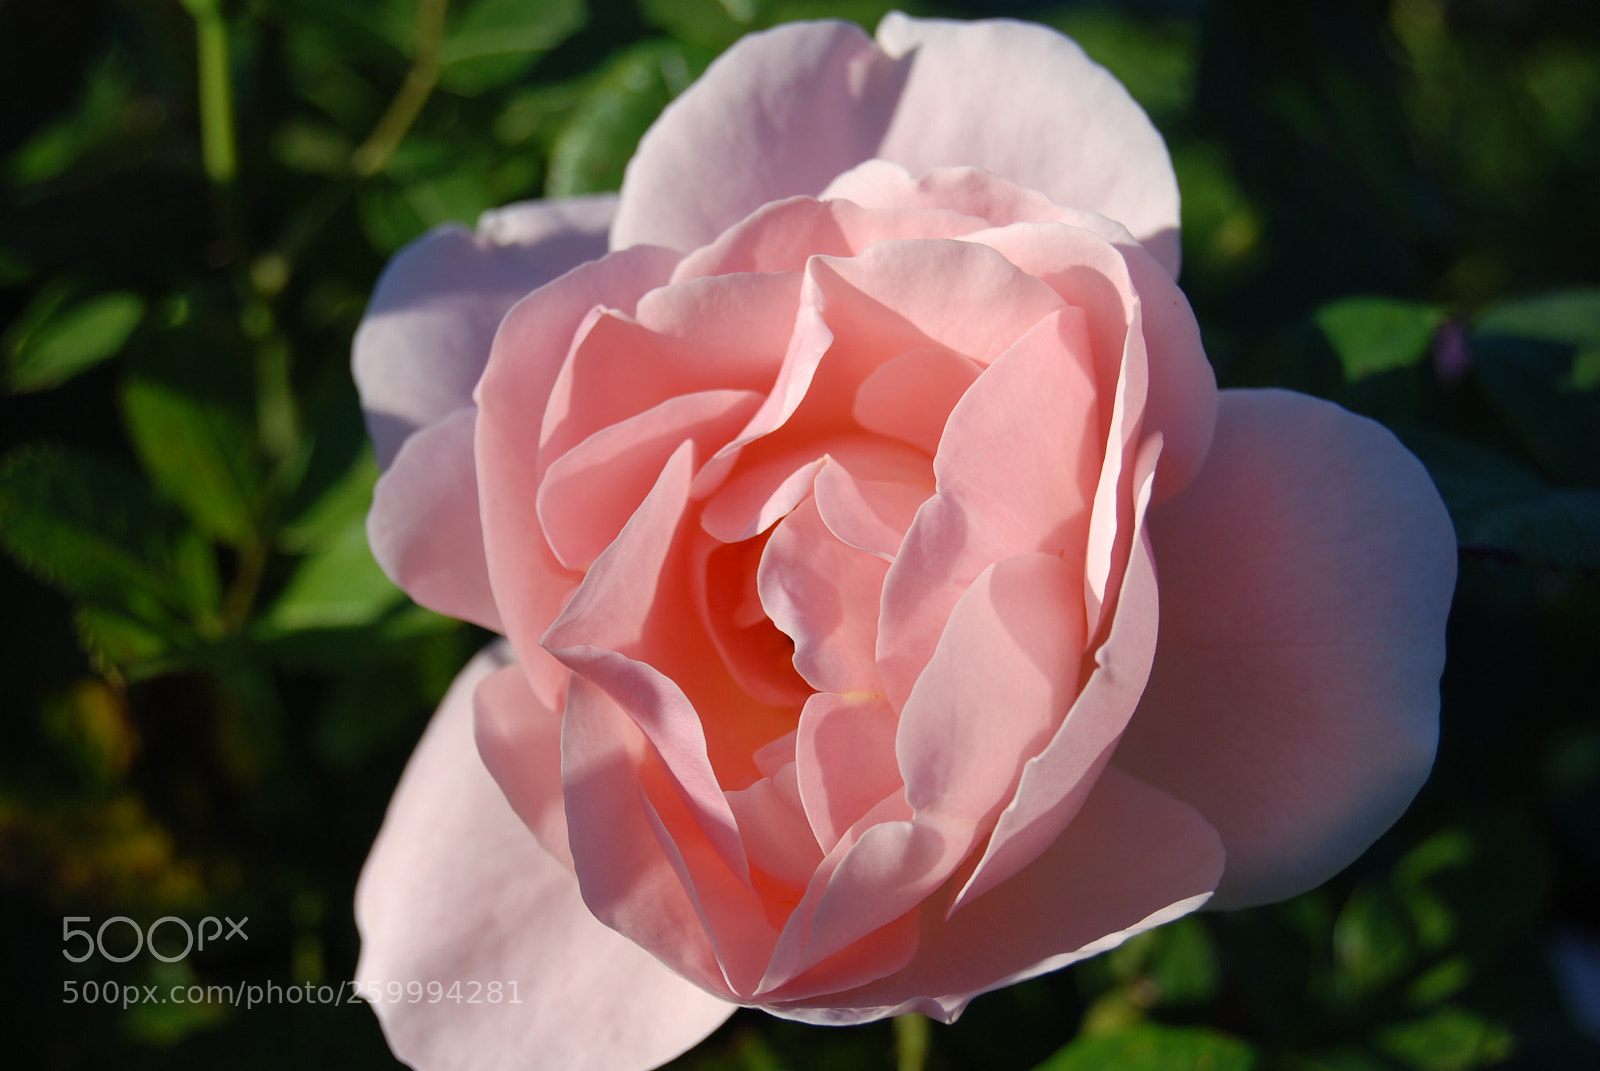 Nikon D80 sample photo. Pink rose photography